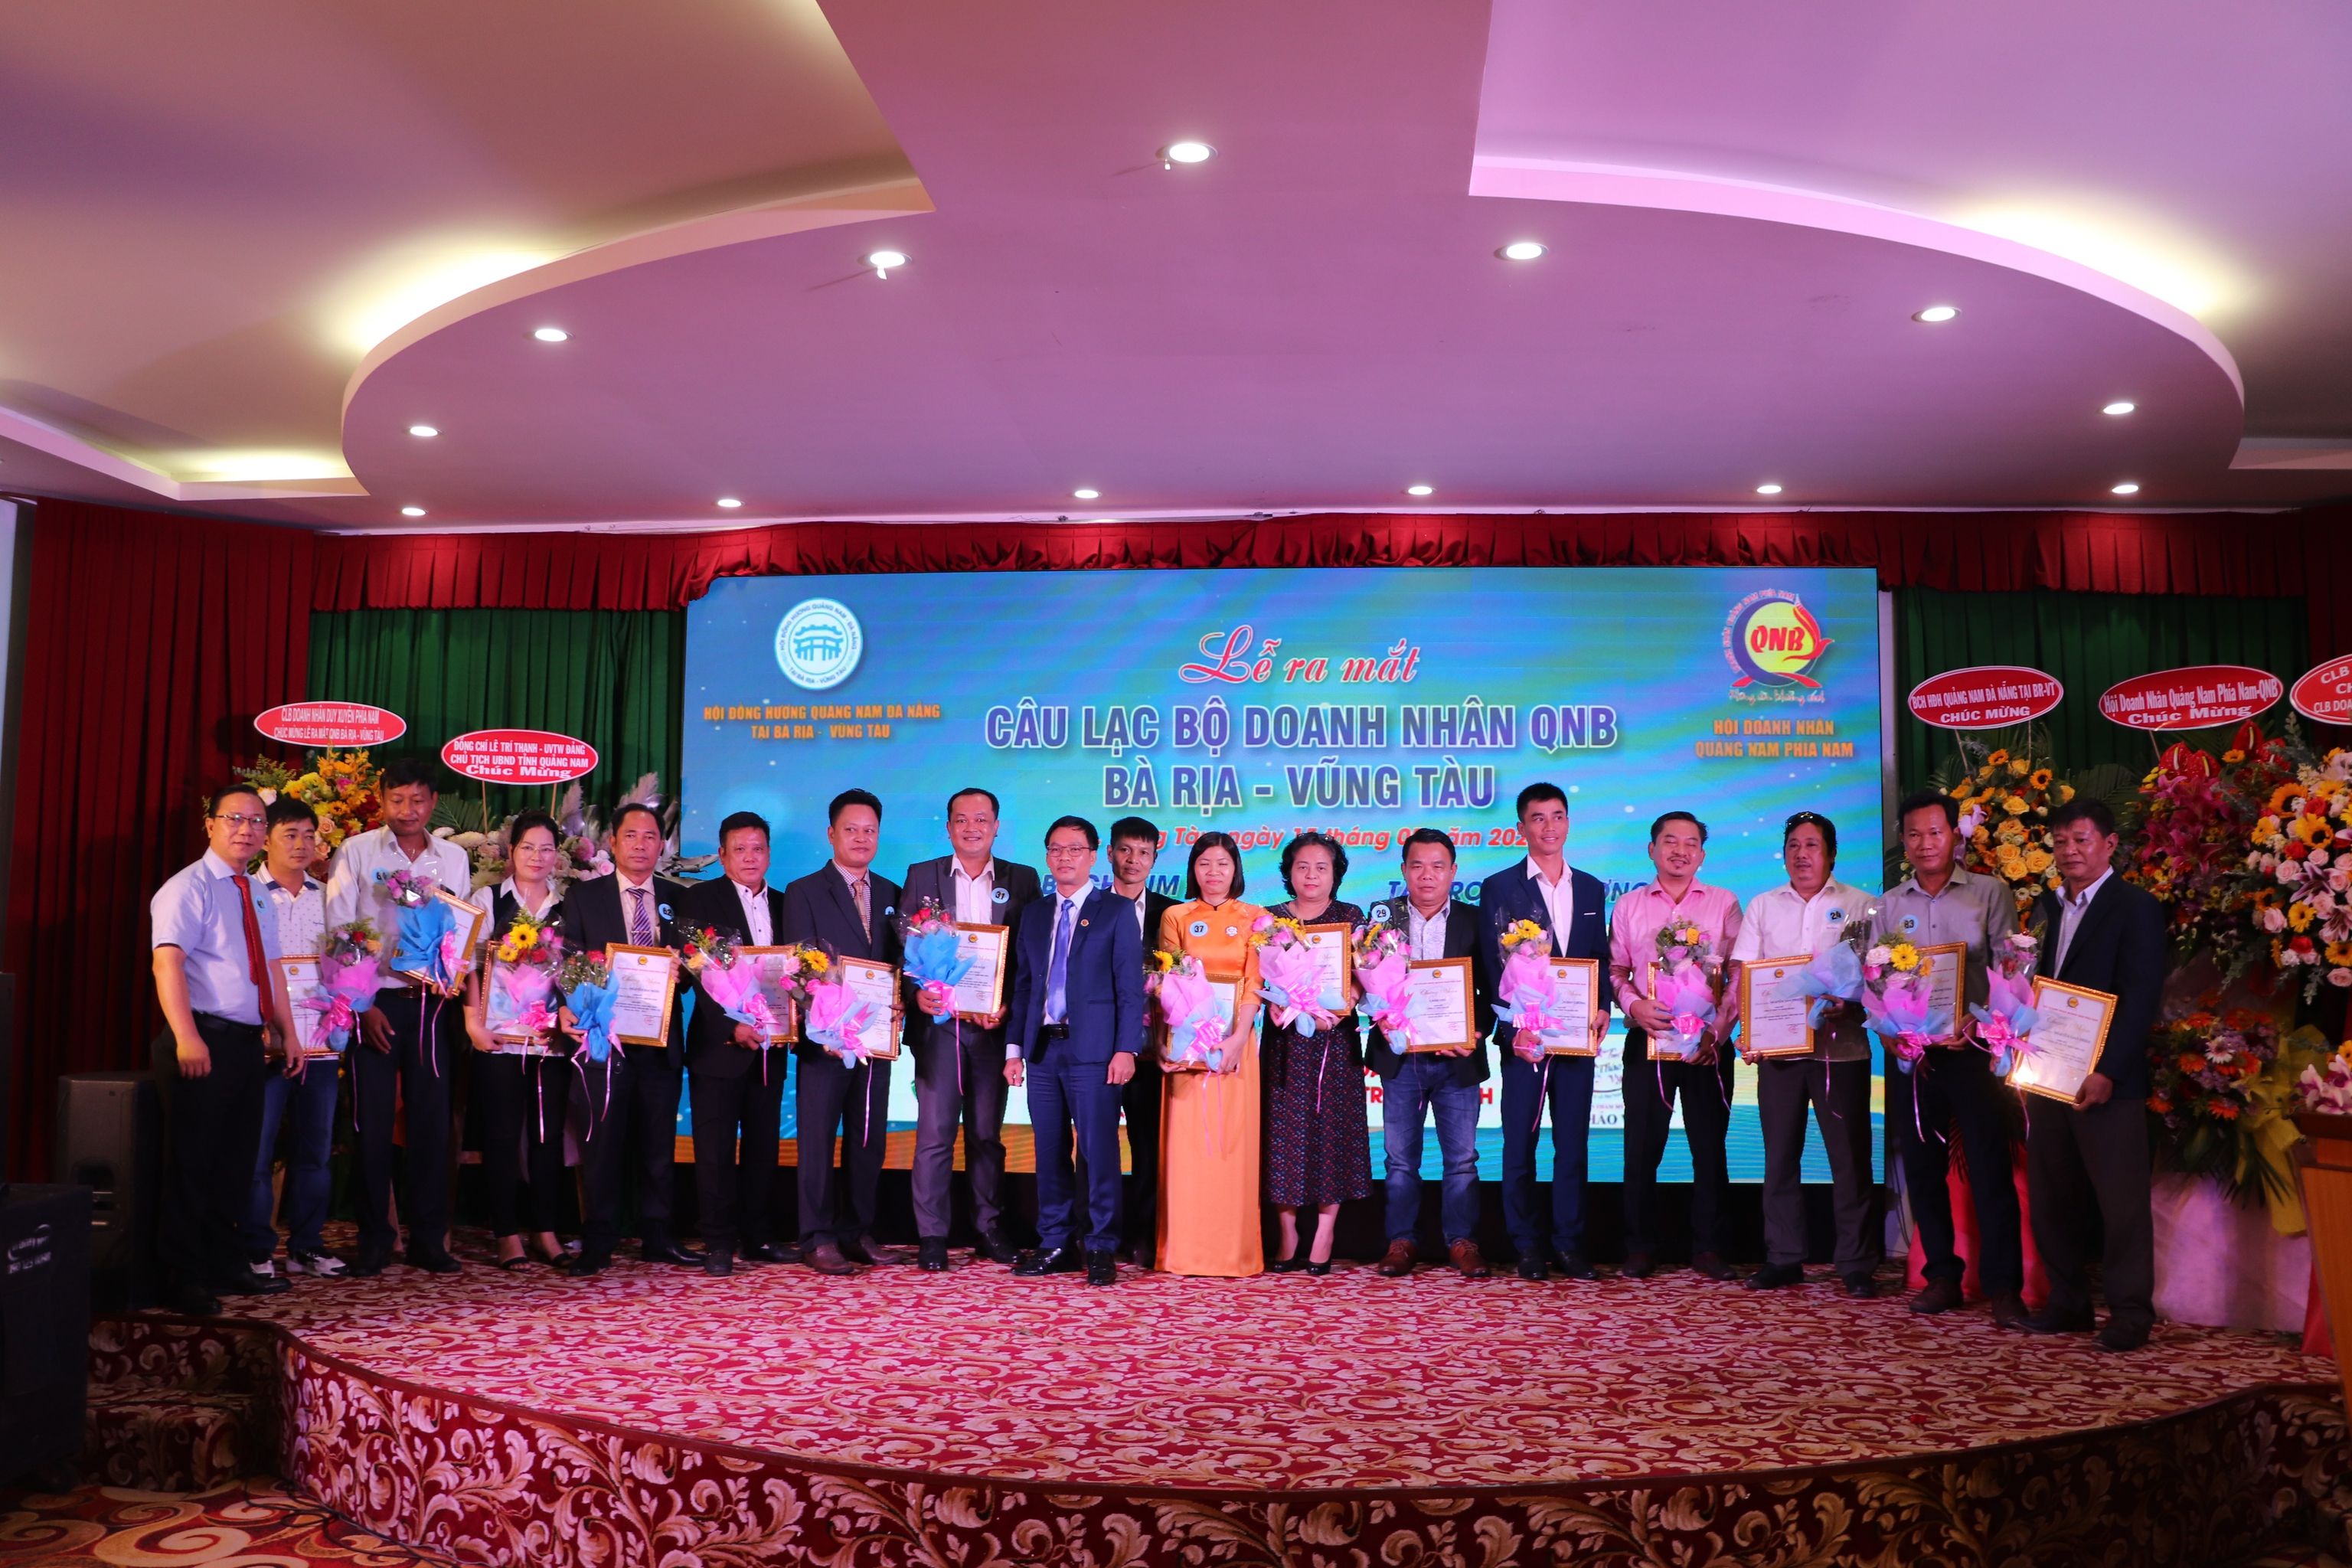 Đại diện QNB phía Nam và QNB Bà Rịa - Vũng Tàu trao giấy chứng nhận cho các hội viên.